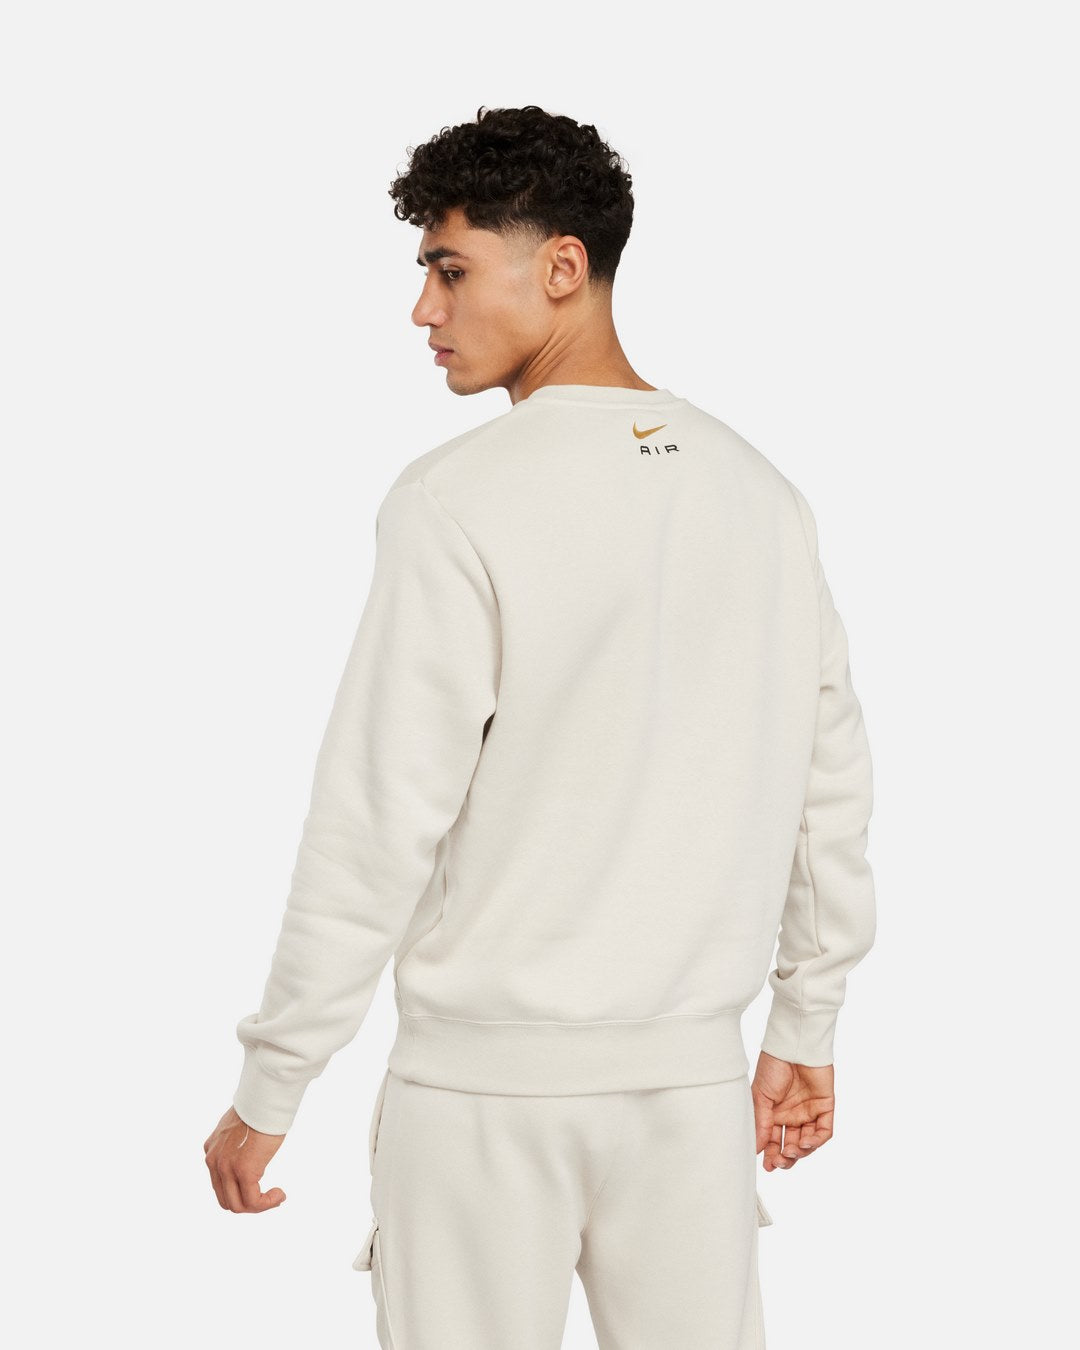 Nike Air Sweatshirt – Beige/Gold/Schwarz